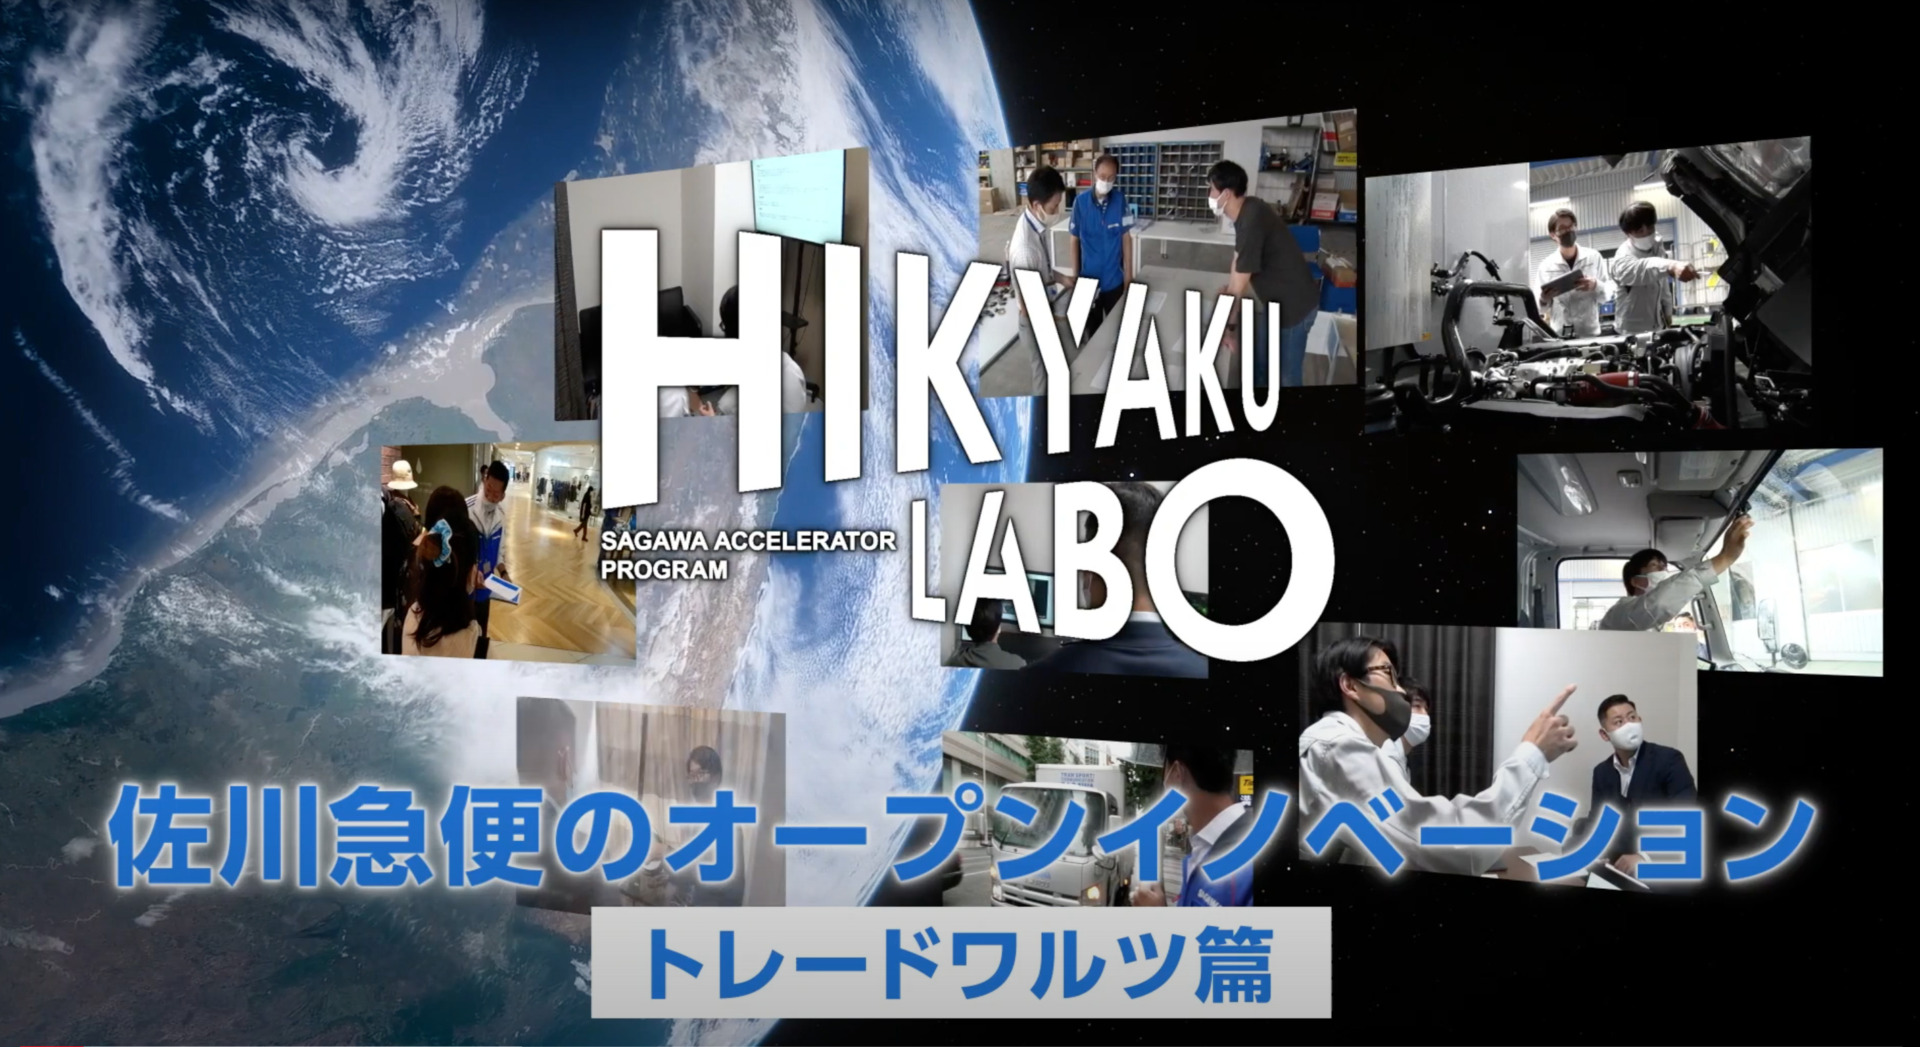 佐川急便の「HIKYAKU LABO事例紹介」にて弊社取組が紹介されました。